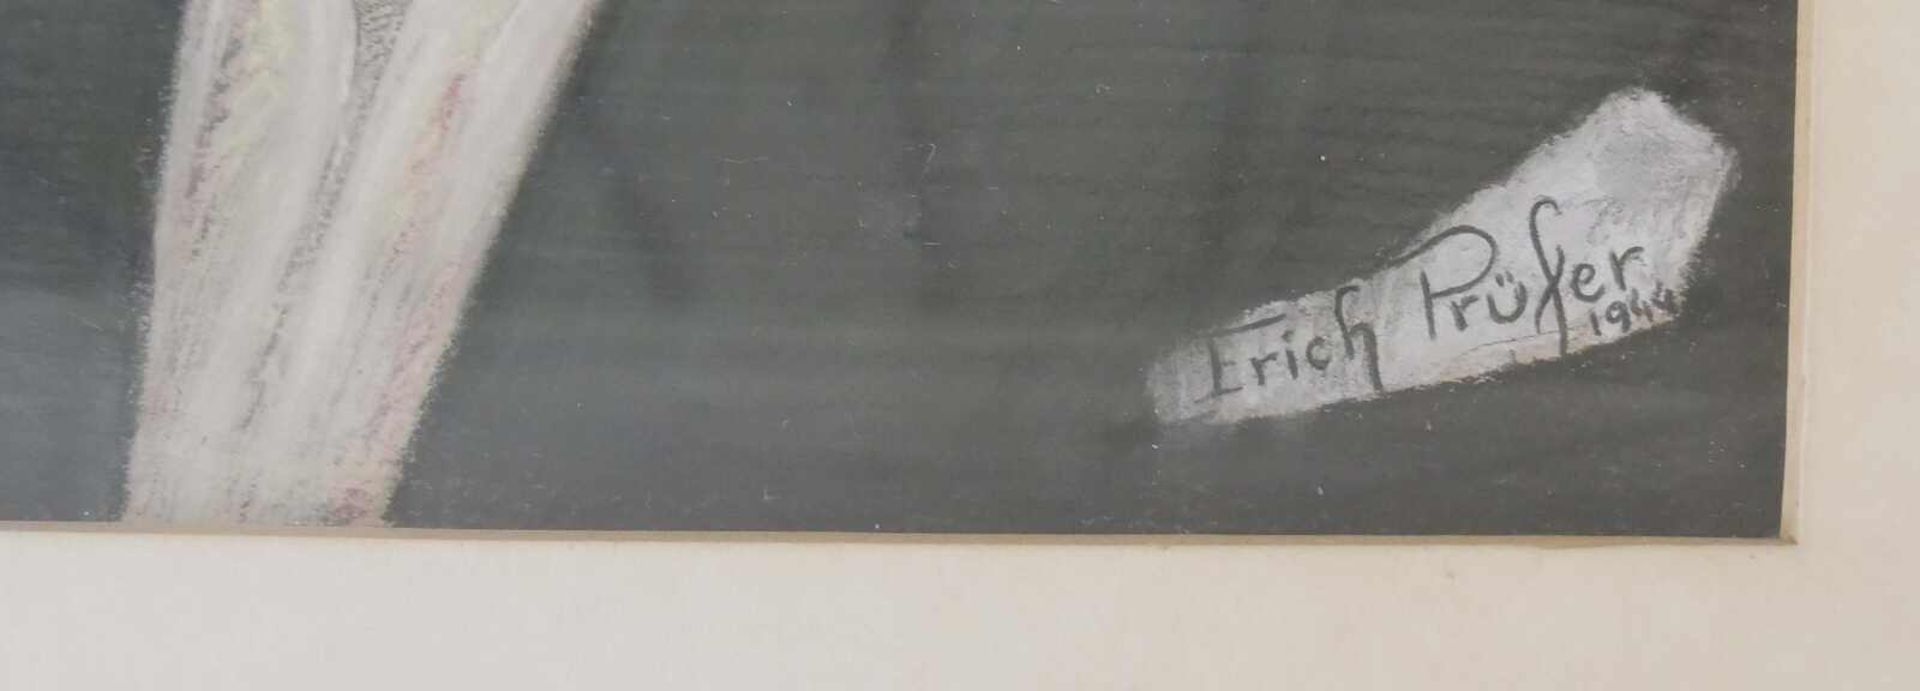 Erich Prüfer, Zeichnung "Frau", rechts unten Signatur Erich Prüfer 1944. Hinter Glas gerahmt. - Image 2 of 3